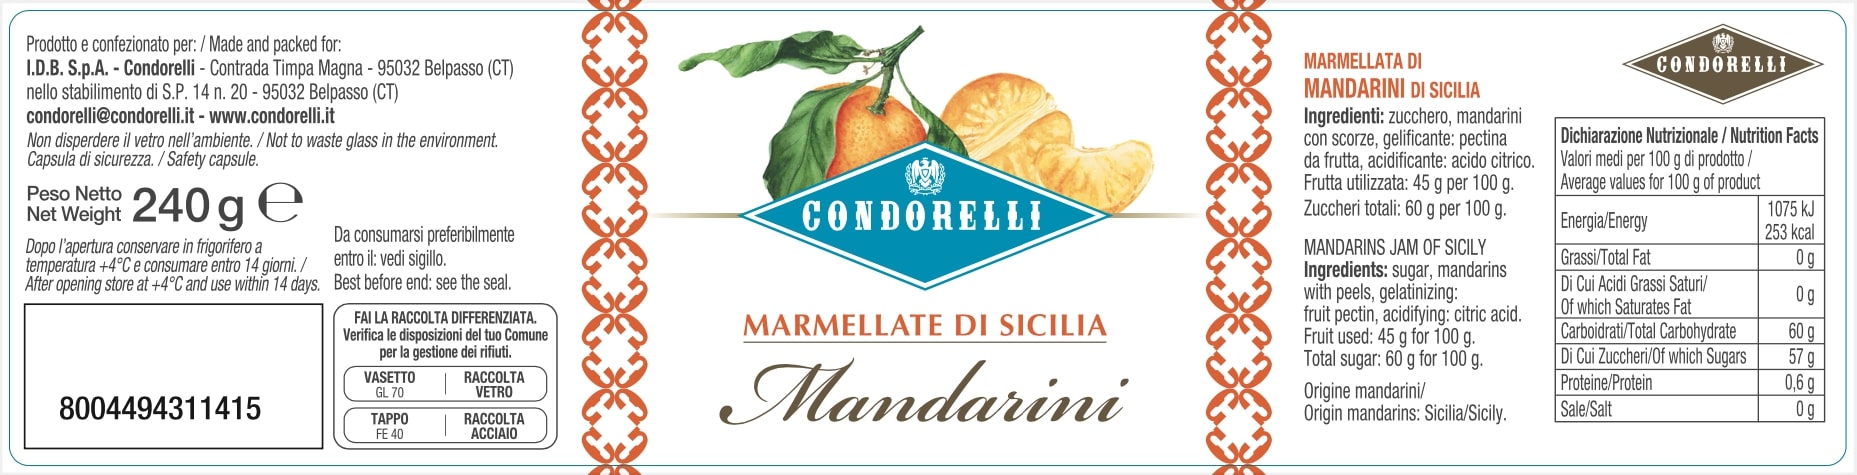 Marmellata di Sicilia - Mandarini